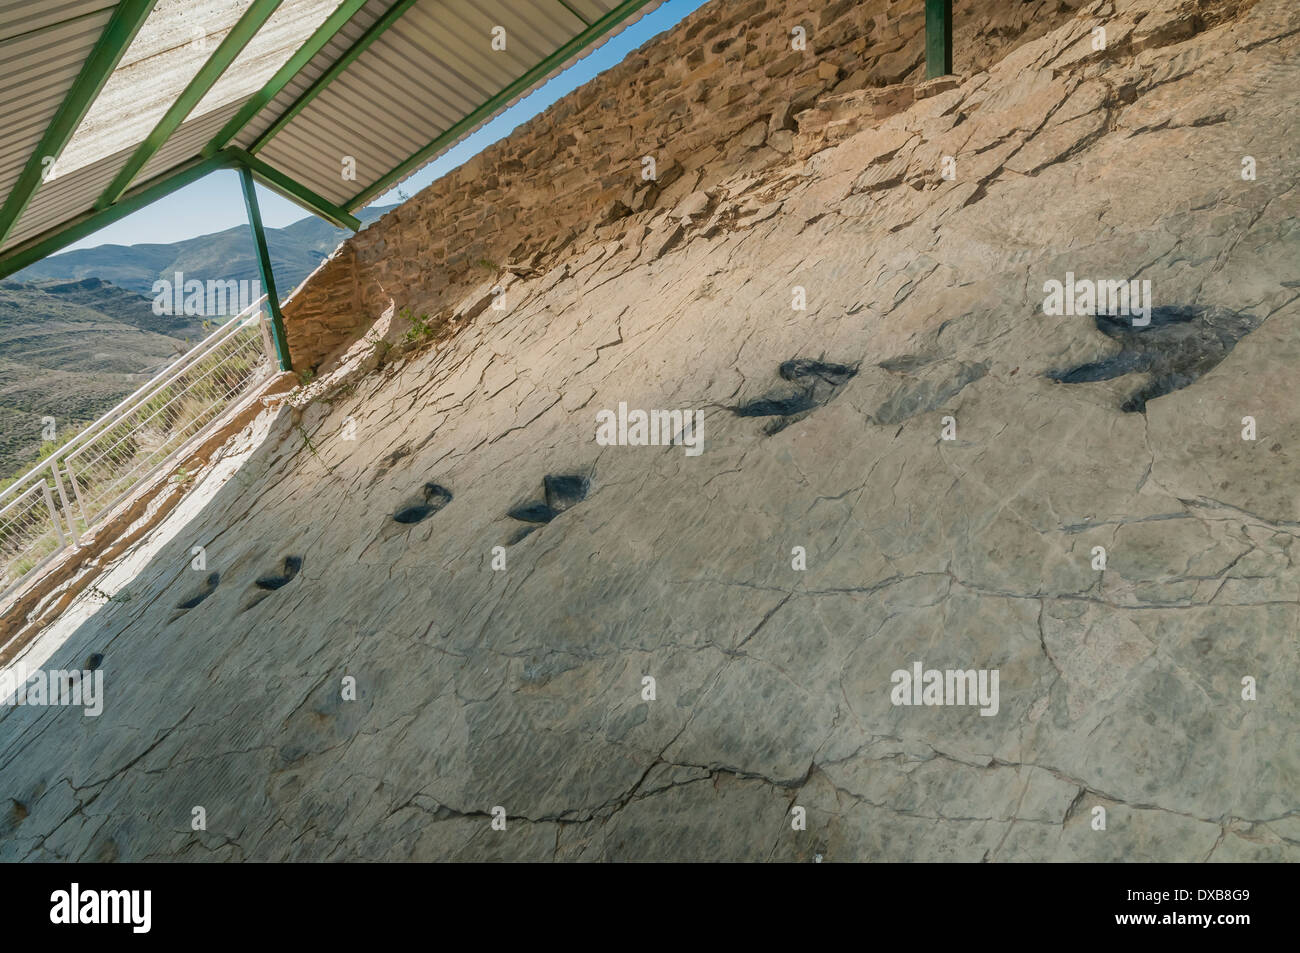 Tracce di impronte di dinosauro (o ichniti) in una roccia piatta, precedentemente il fondo di una laguna interna al sito fossile Cornago, la Rioja, Spagna. Foto Stock